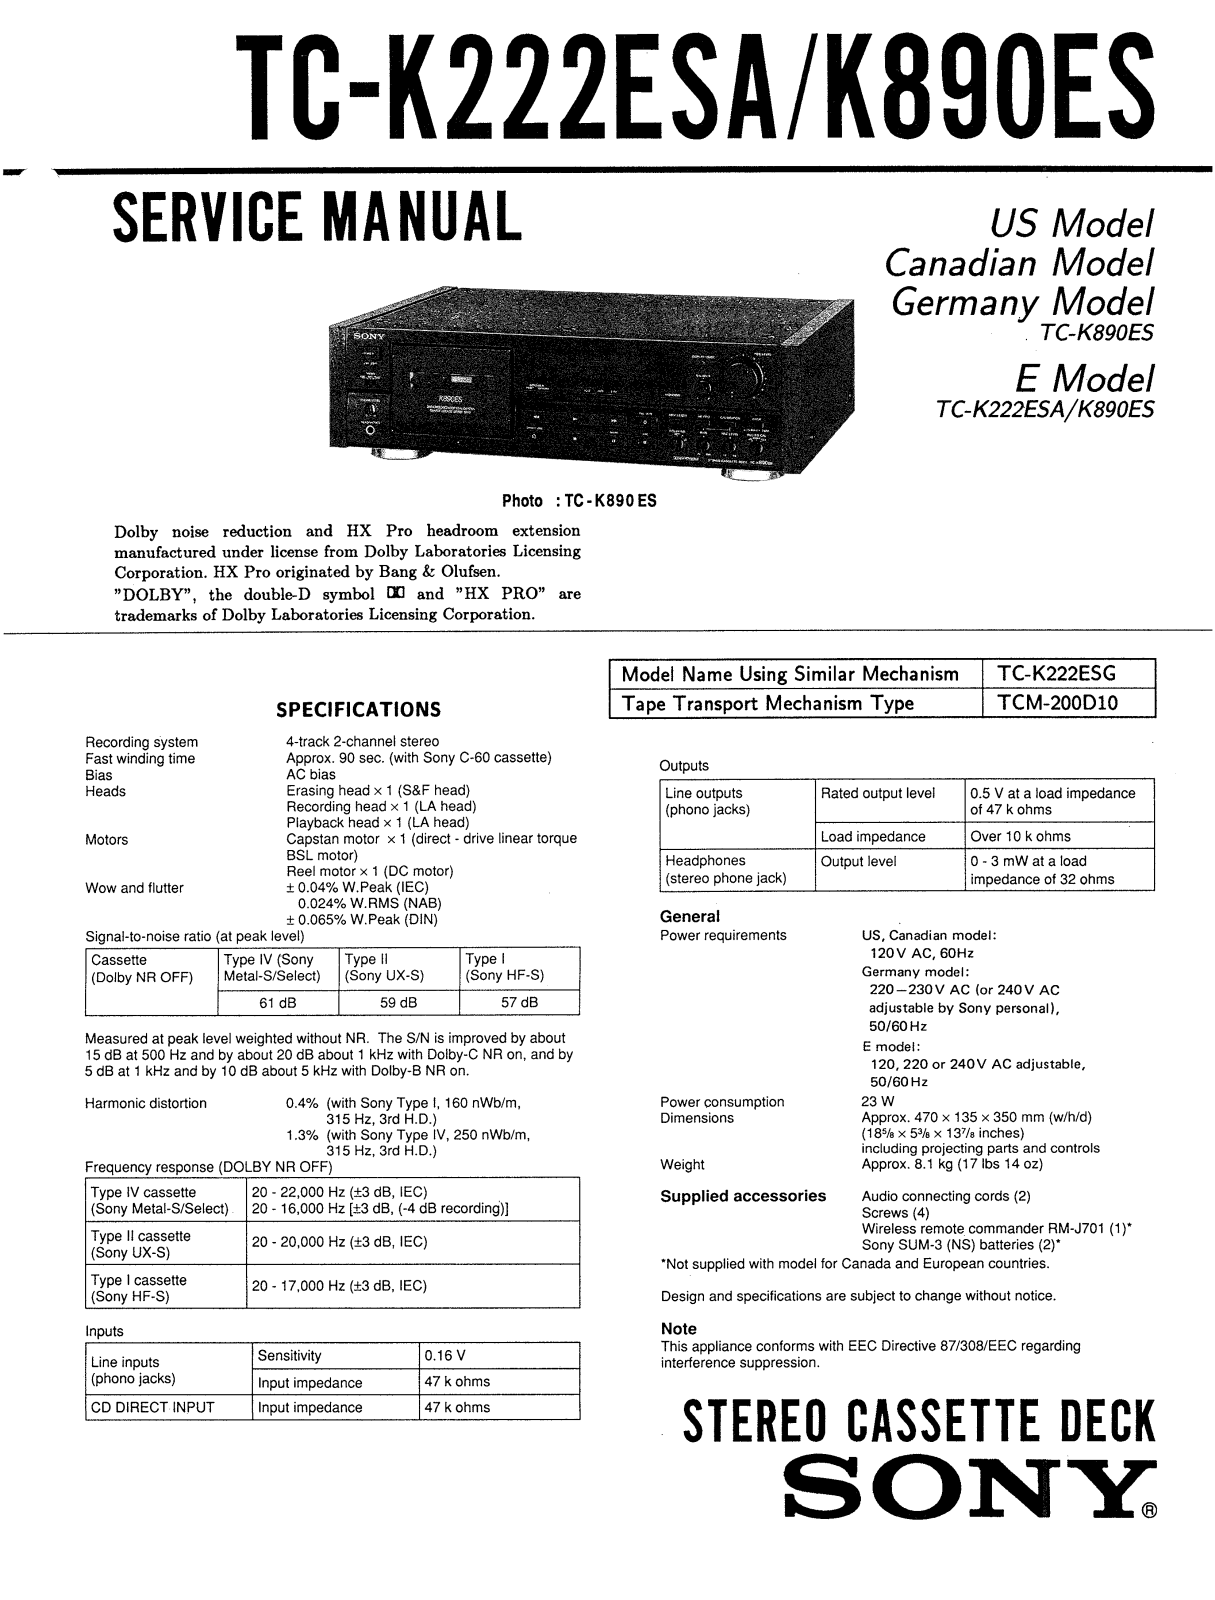 Sony TCK-890-ES Service manual